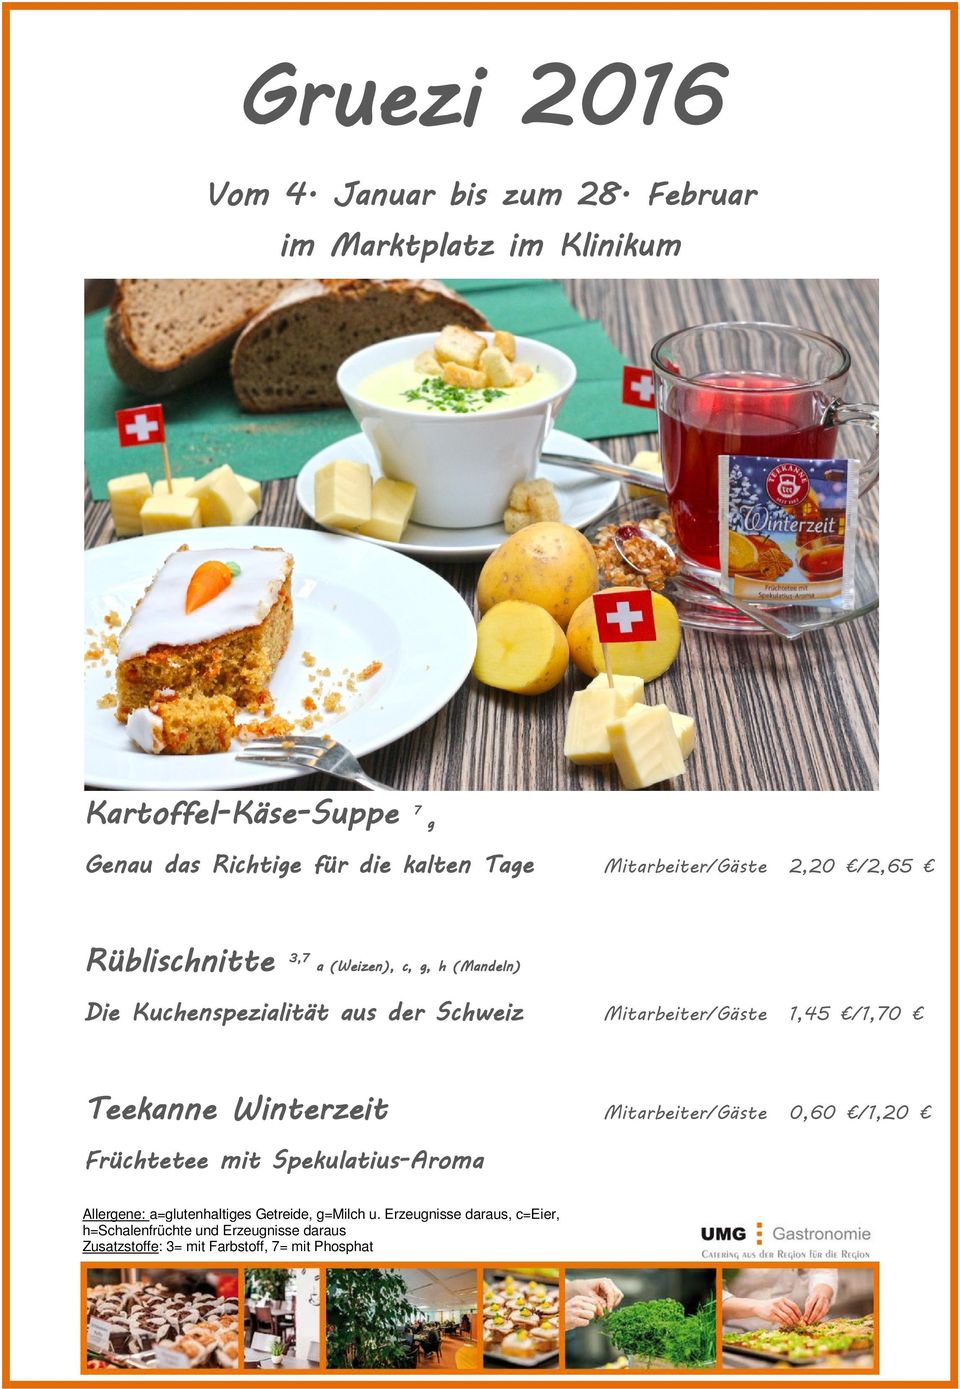 Rüblischnitte 3,7 a (Weizen), c, g, h (Mandeln) e Kuchenspezialität aus der Schweiz tarbeiter/gäste 1,45 /1,70 Teekanne